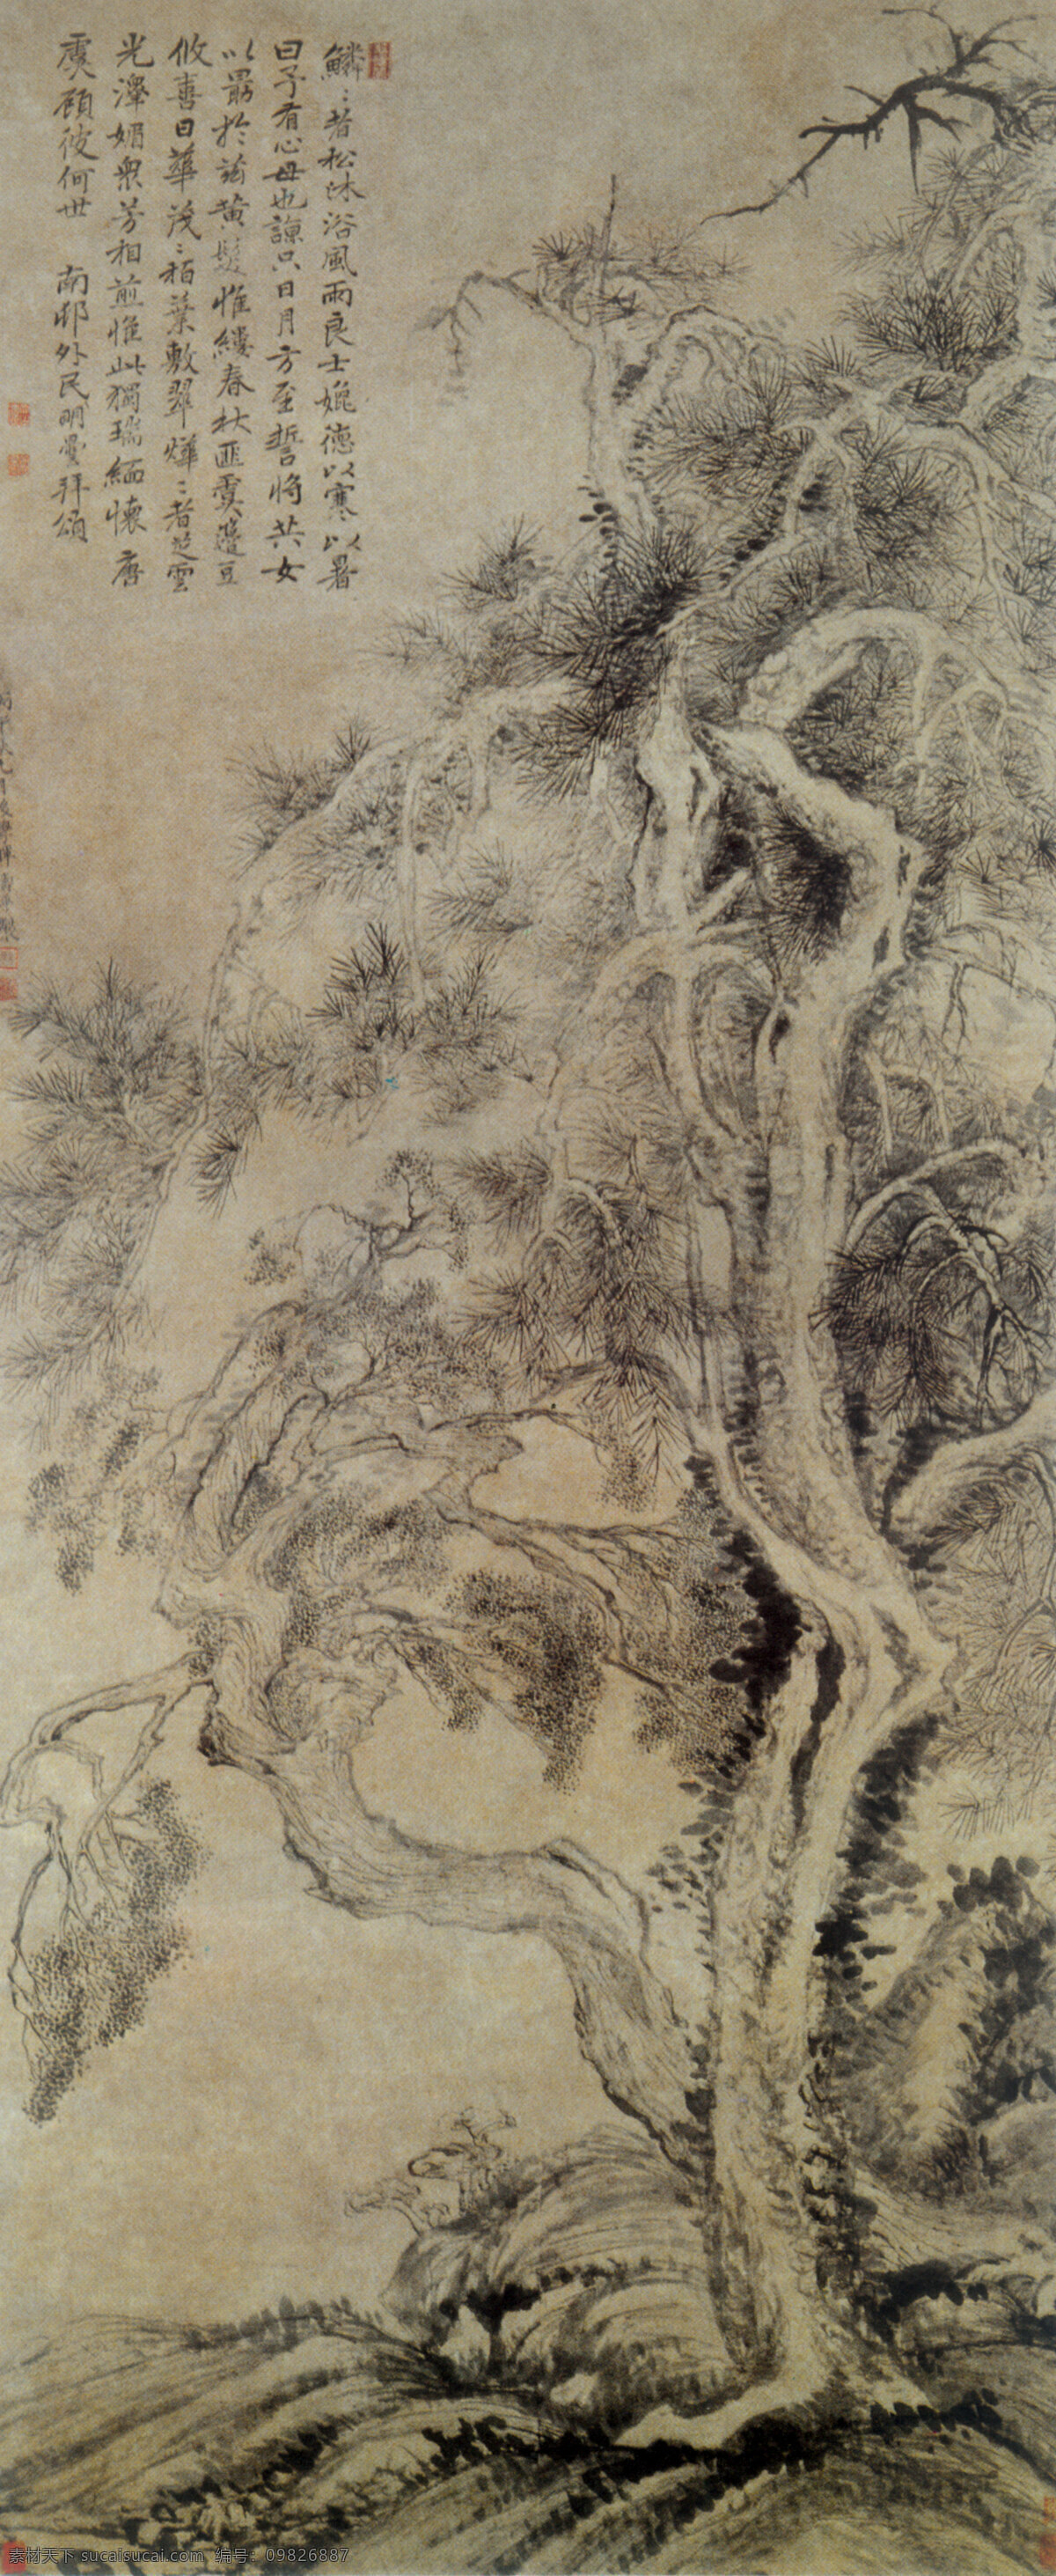 中国 传世 名画 古图 古画 传统 水墨 山水画 艺术 文化艺术 传统文化 设计图库